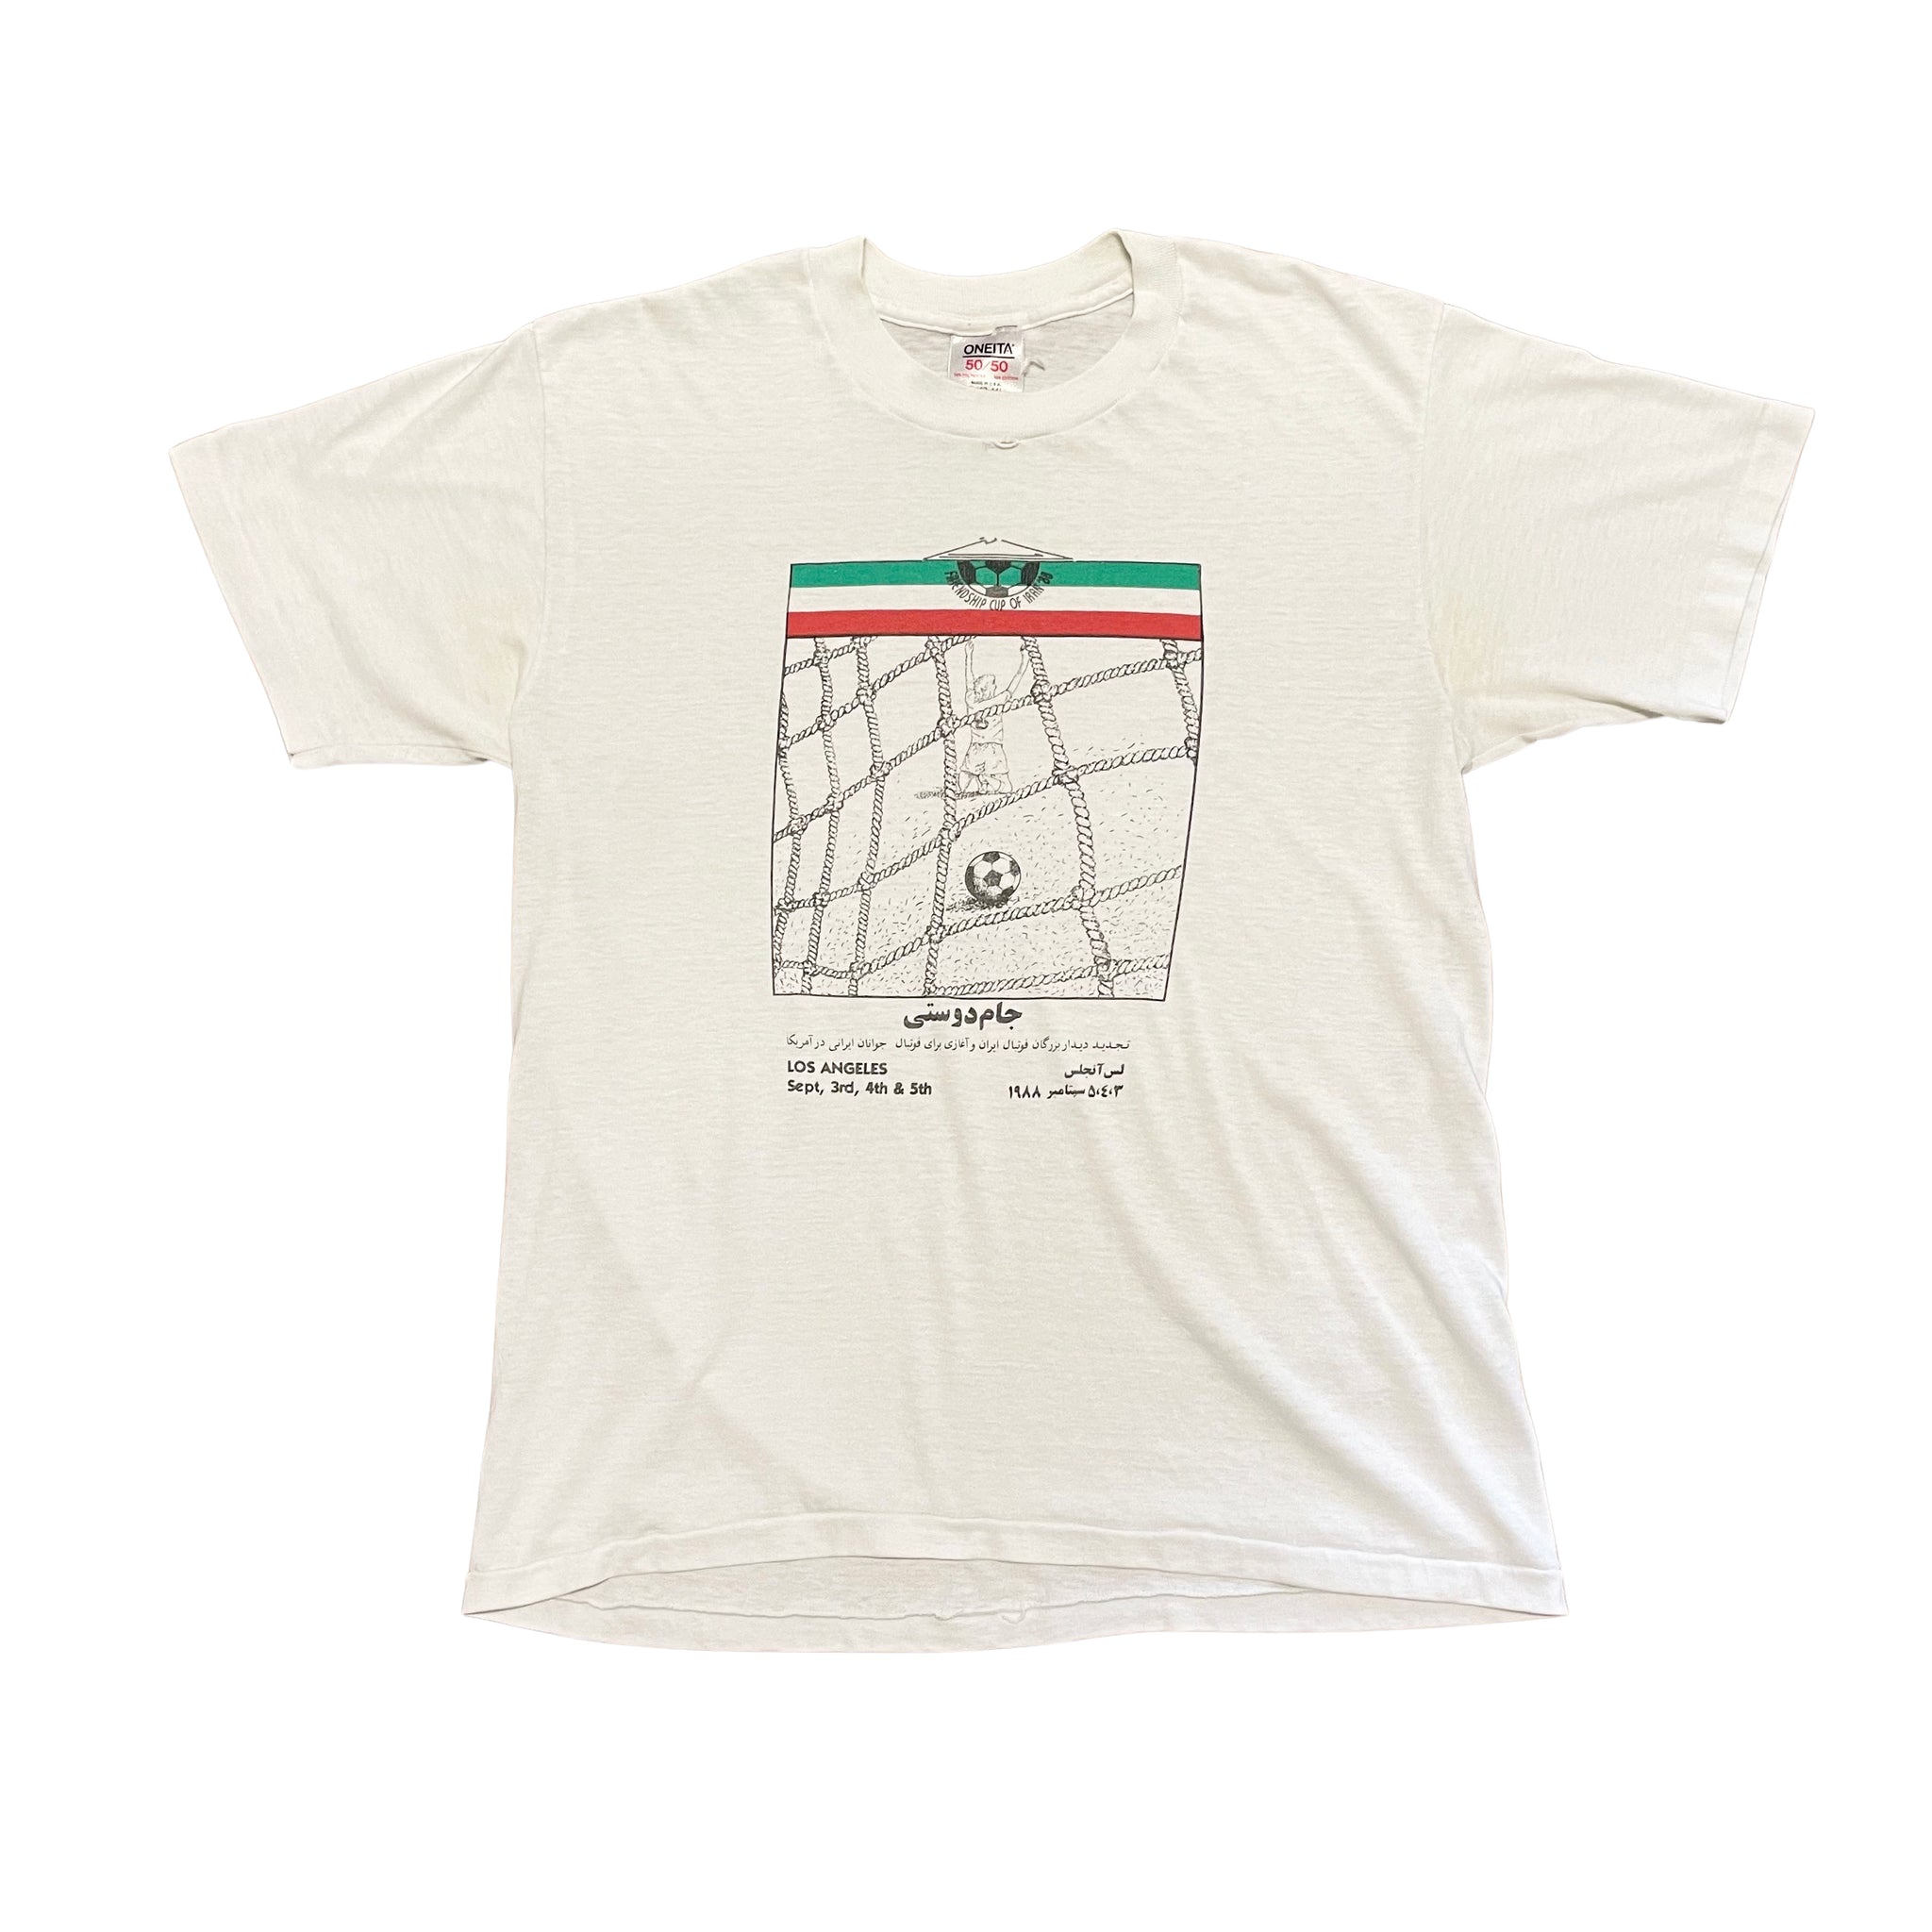 1988 Friendship Cup of Iran T-Shirt - L